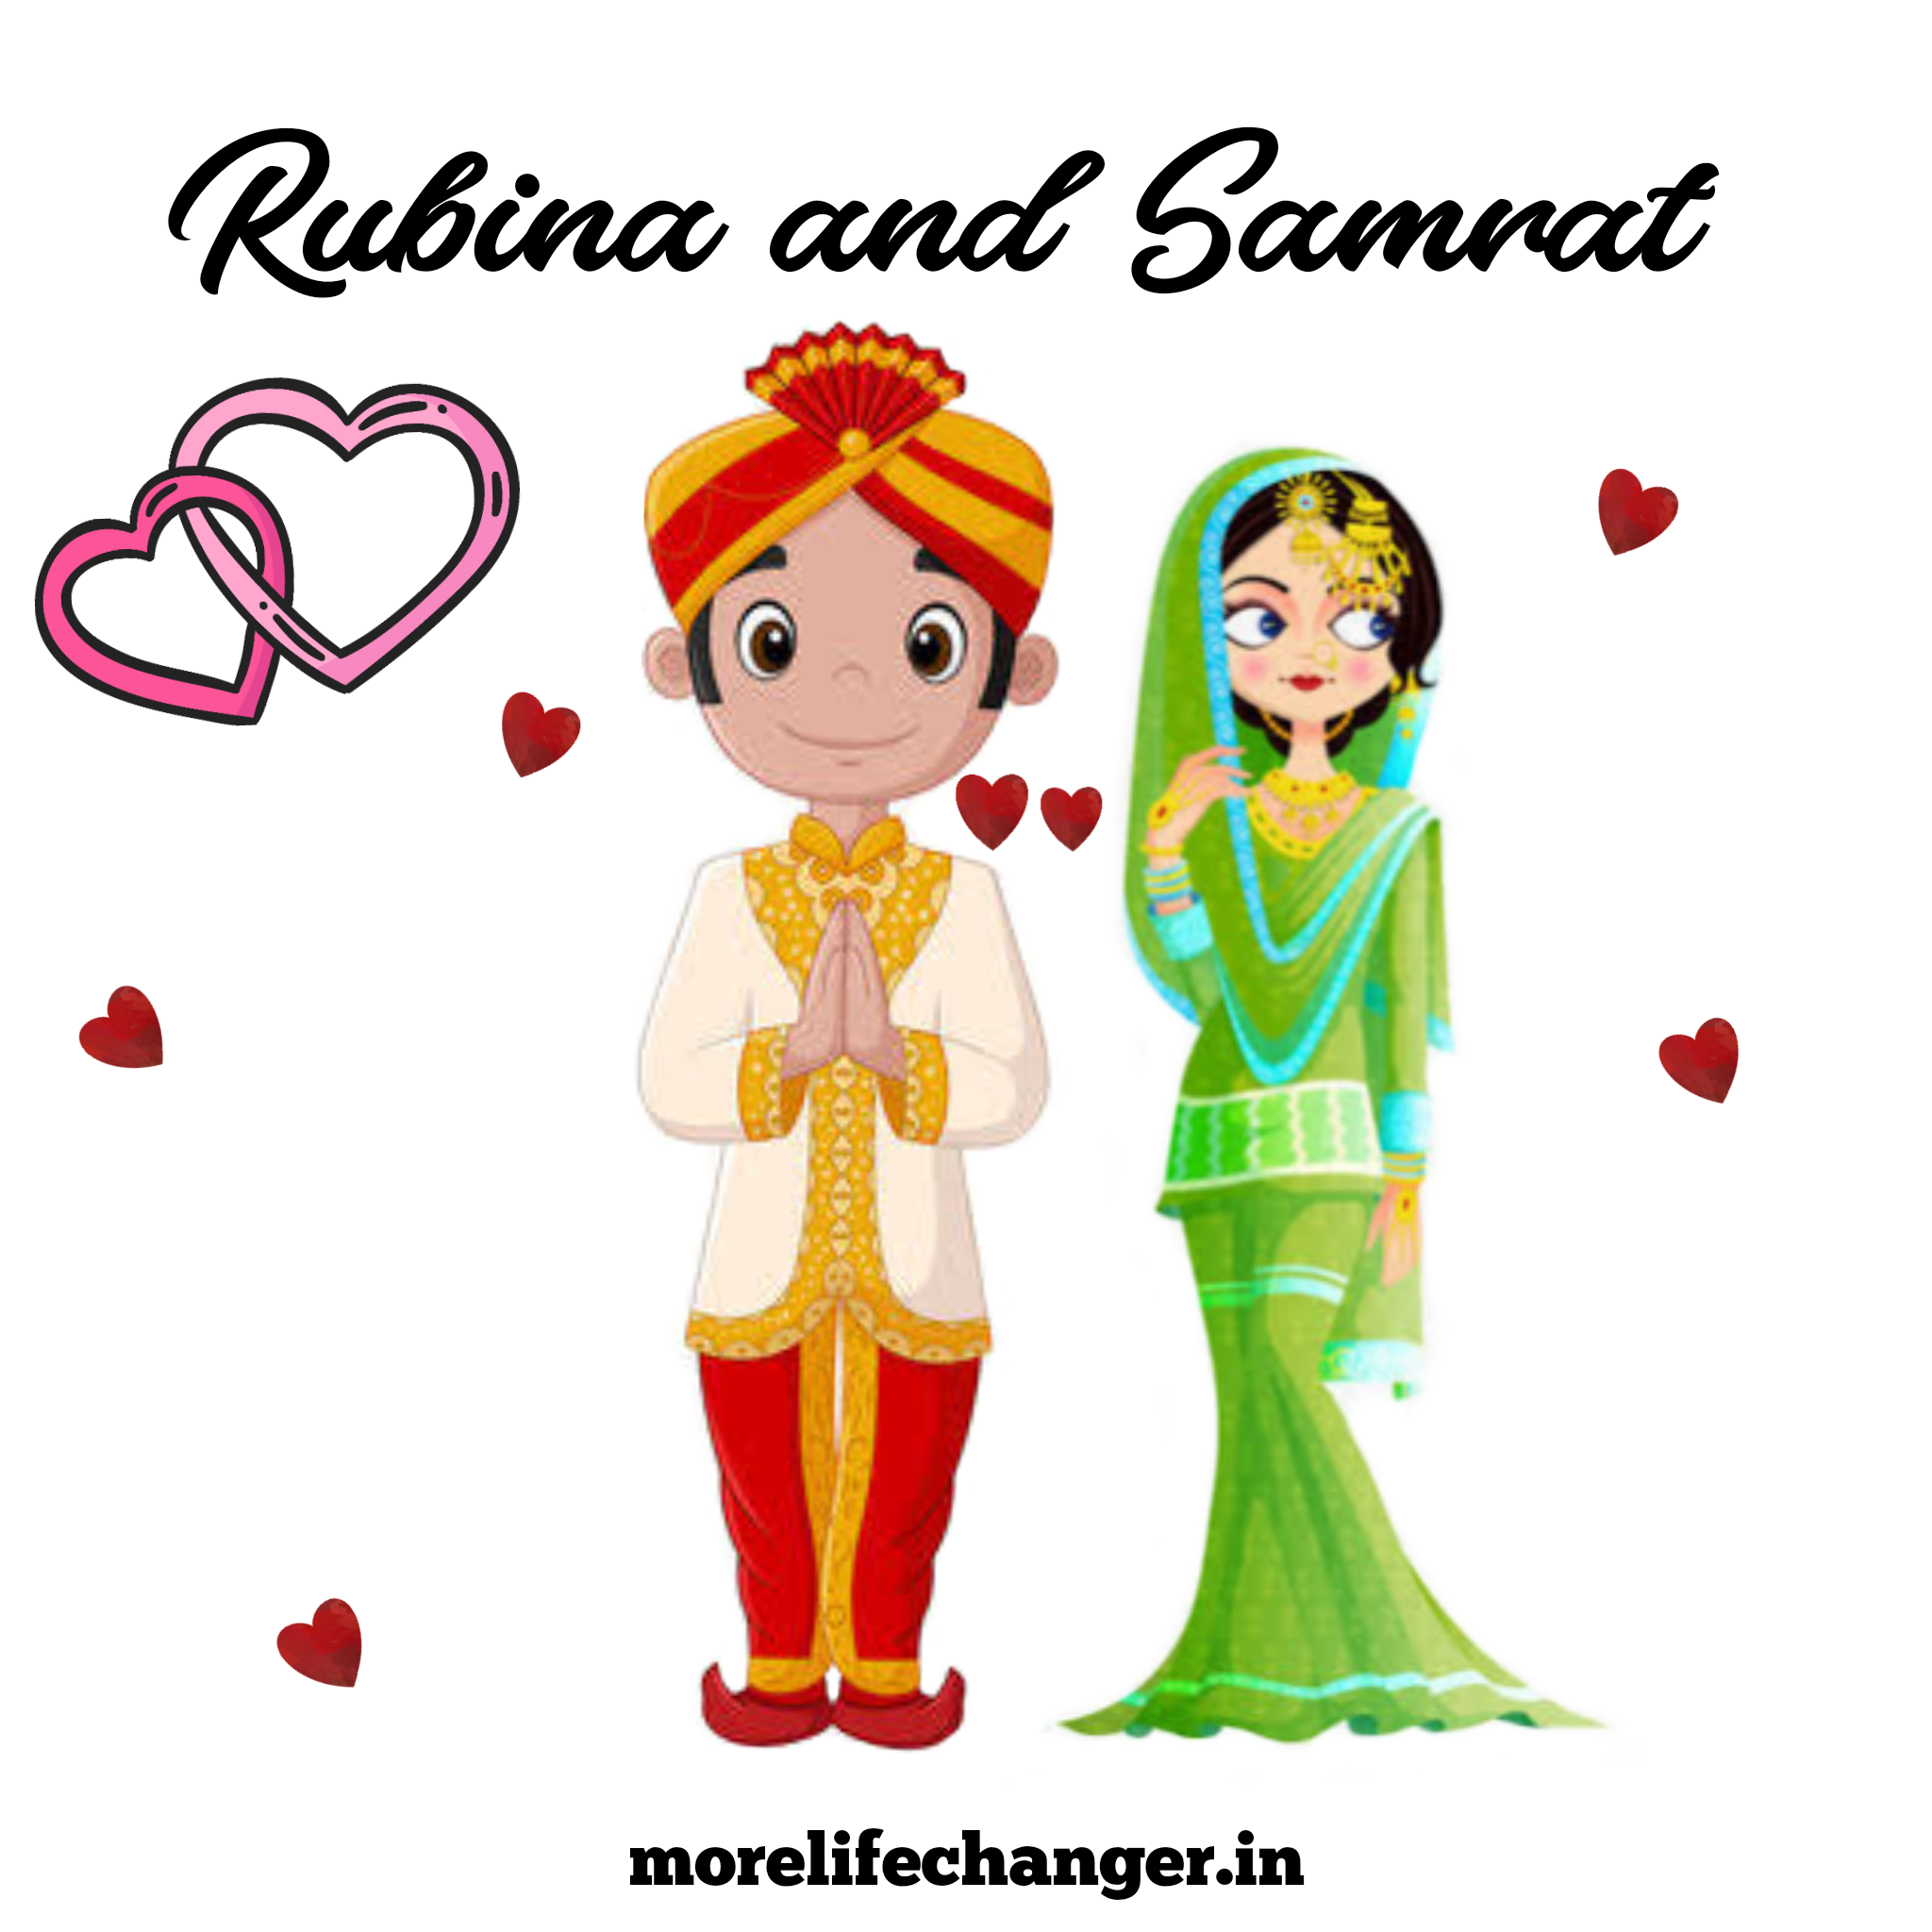 Rubina and Samrat